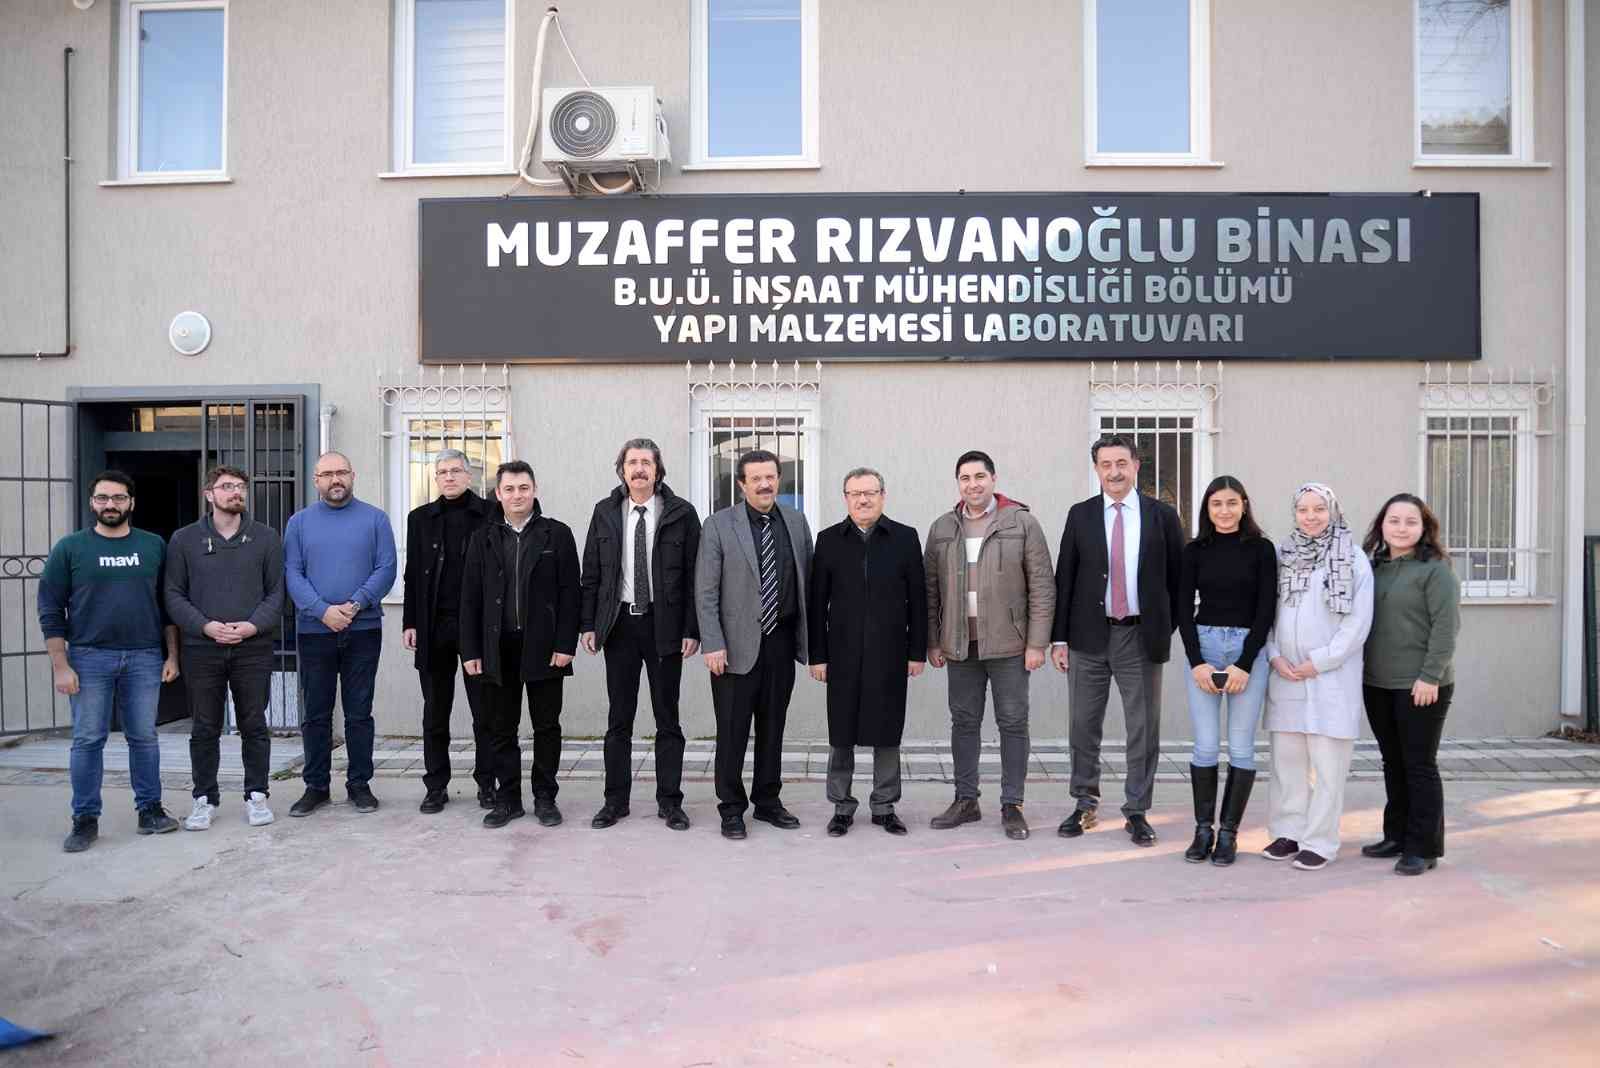 Uludağ Üniversitesi’nde modern laboratuvarlarda güçlü bilimsel çalışmalara imza atılıyor